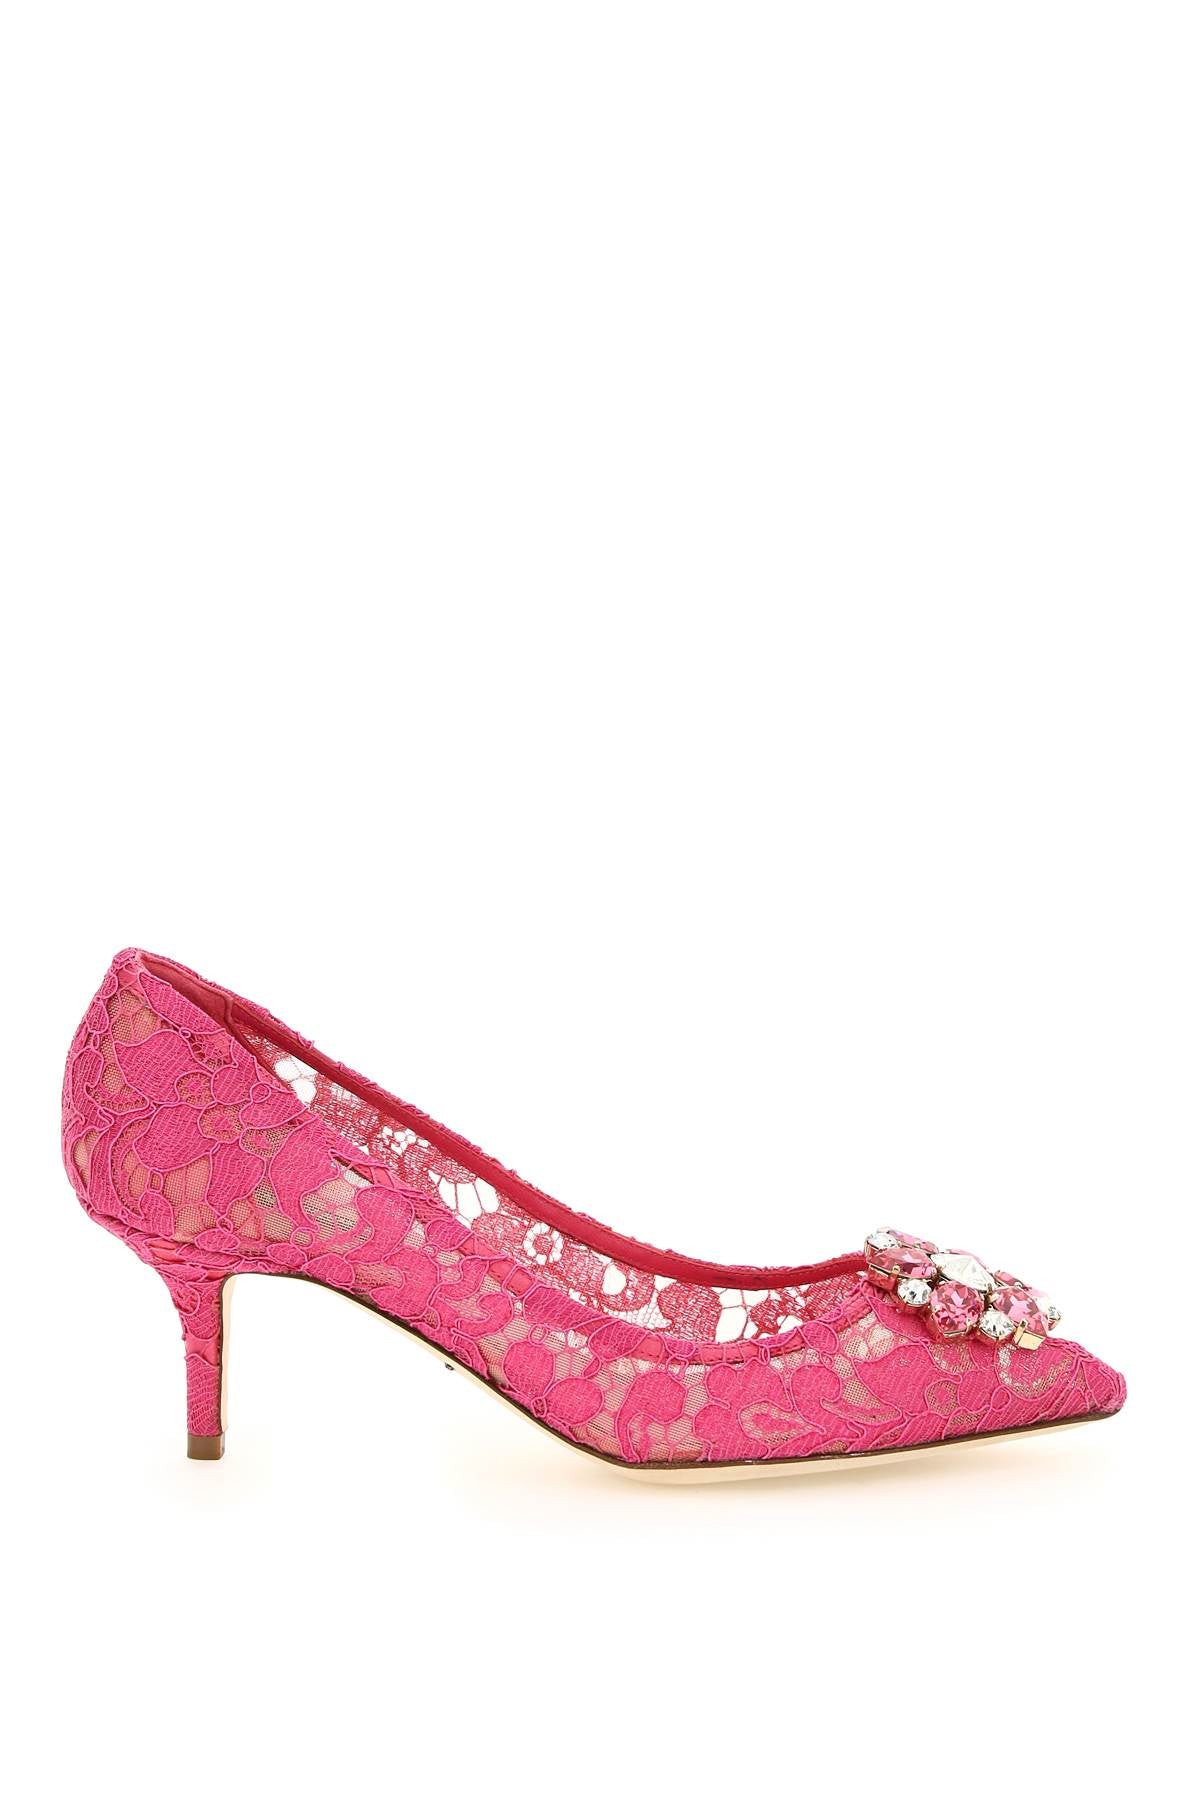 Giày cao gót DOLCE & GABBANA Charmant màu hồng & tím cho nữ